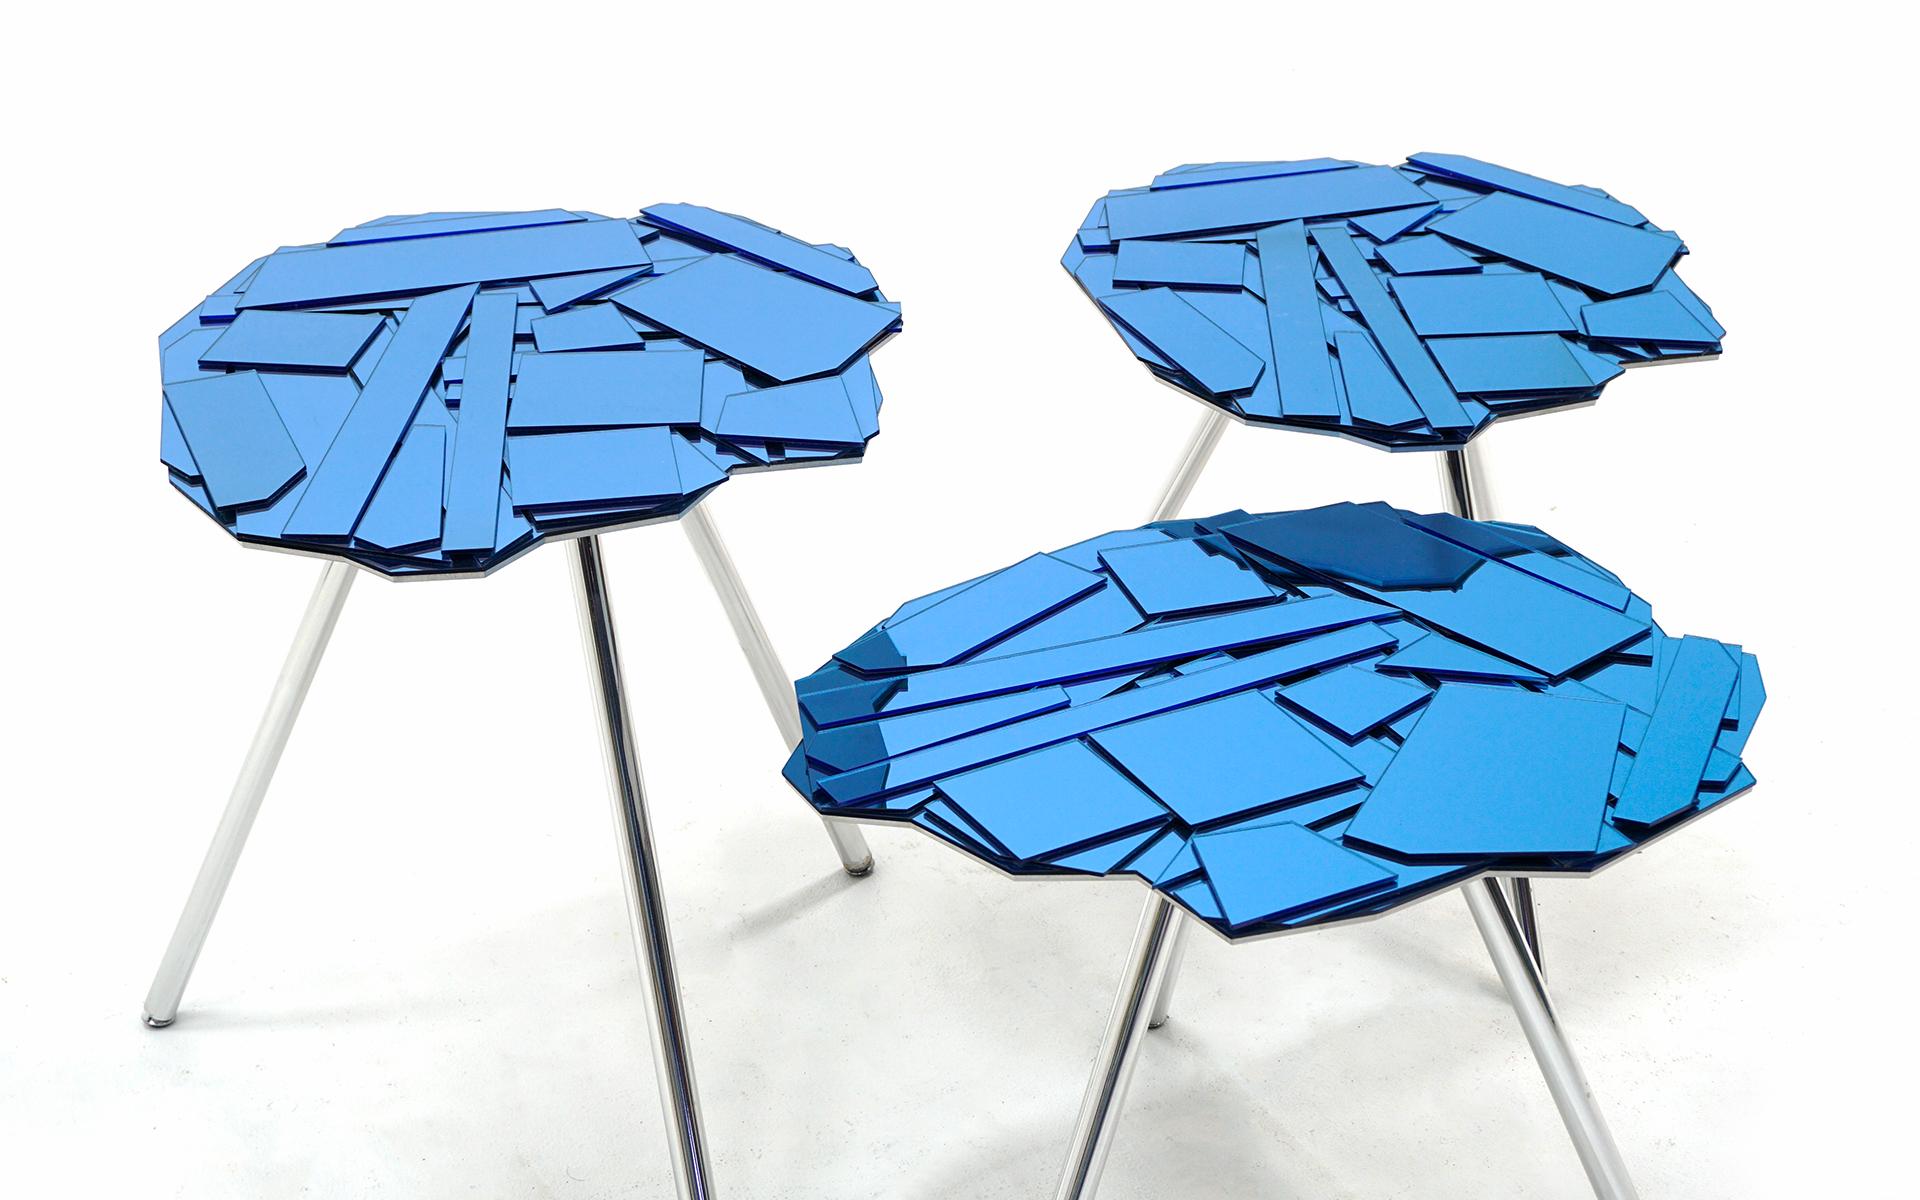 Ensemble de trois tables Brasilia conçues par Fernando et Humberto Campana pour Edra, Italie, 2006. Plateaux en verre Reflex miroité de couleur bleue et pieds en aluminium chromé. Les éclats de verre sont montés sur une plaque d'aluminium découpée